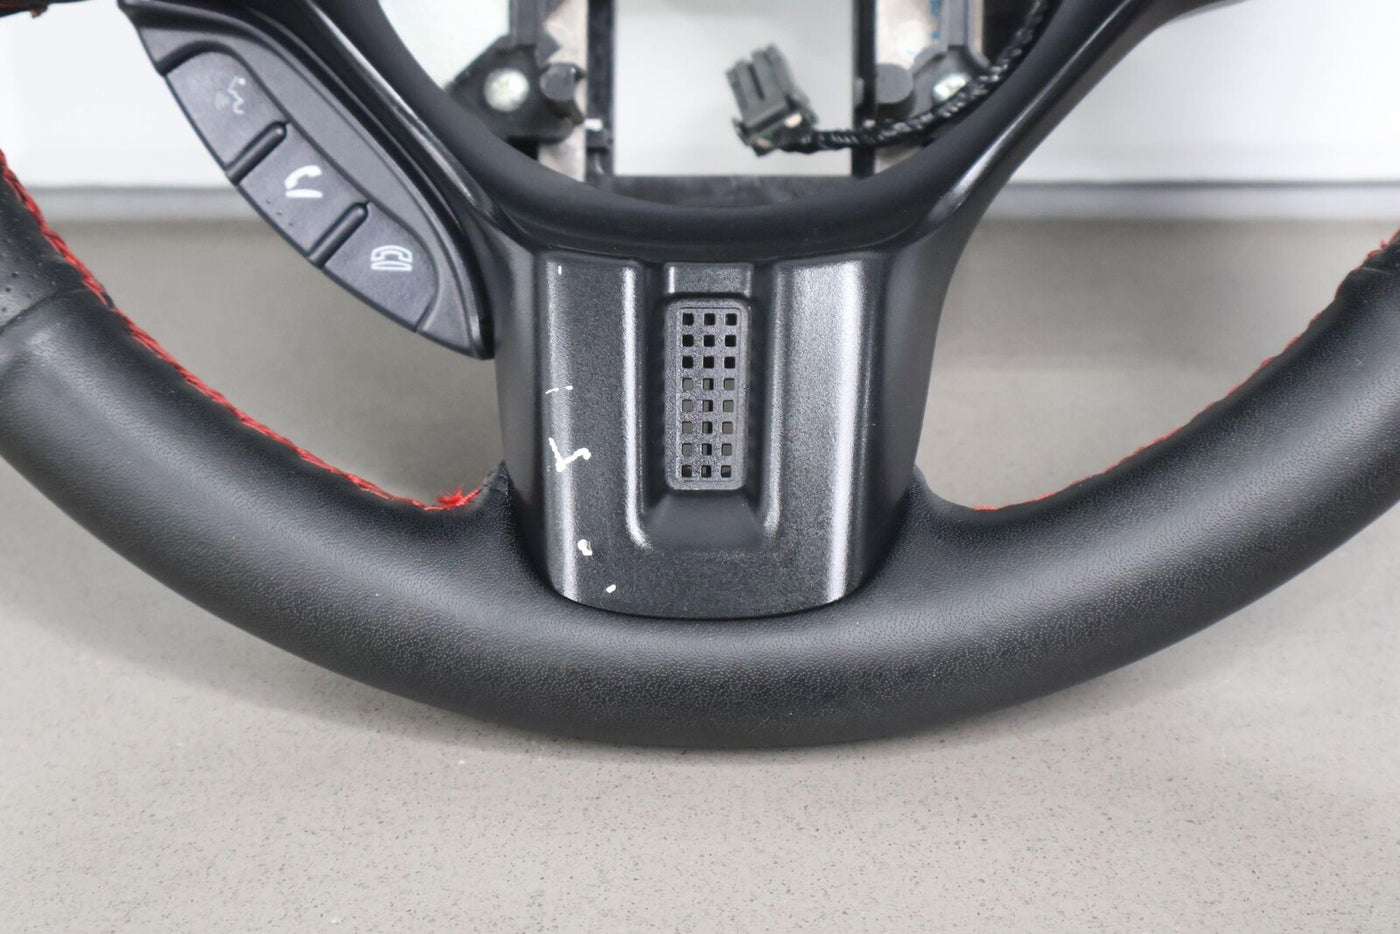 08-15 Mitsubishi Lancer Evolution X GSR Steering Wheel (Black/Red Stitch)